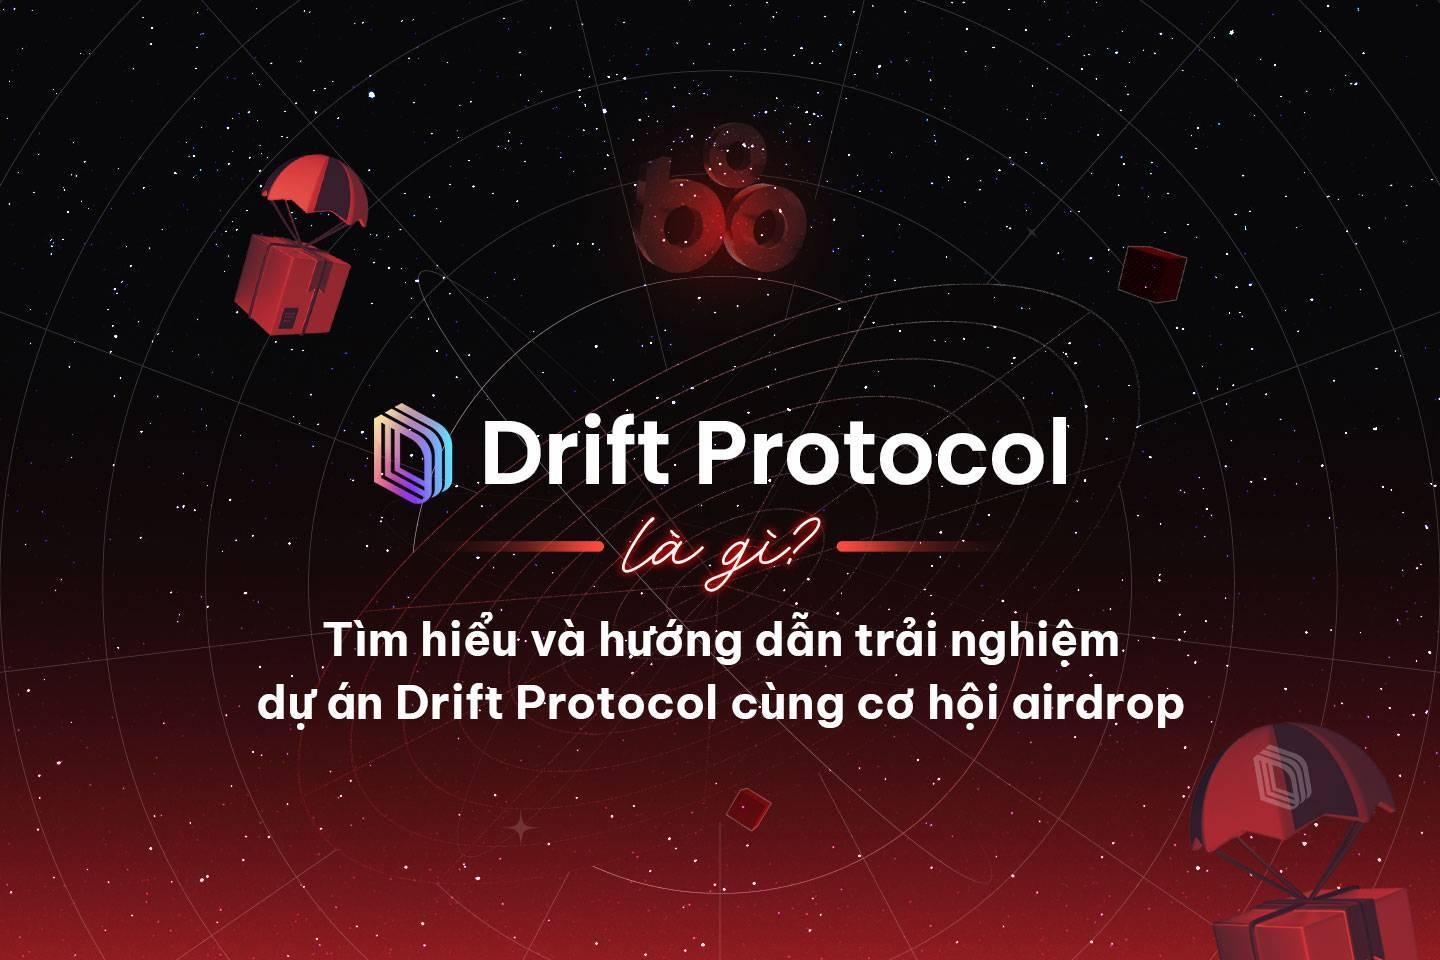 drift-protocol-la-gi-tim-hieu-va-huong-dan-trai-nghiem-du-an-drift-protocol-cung-co-hoi-airdrop